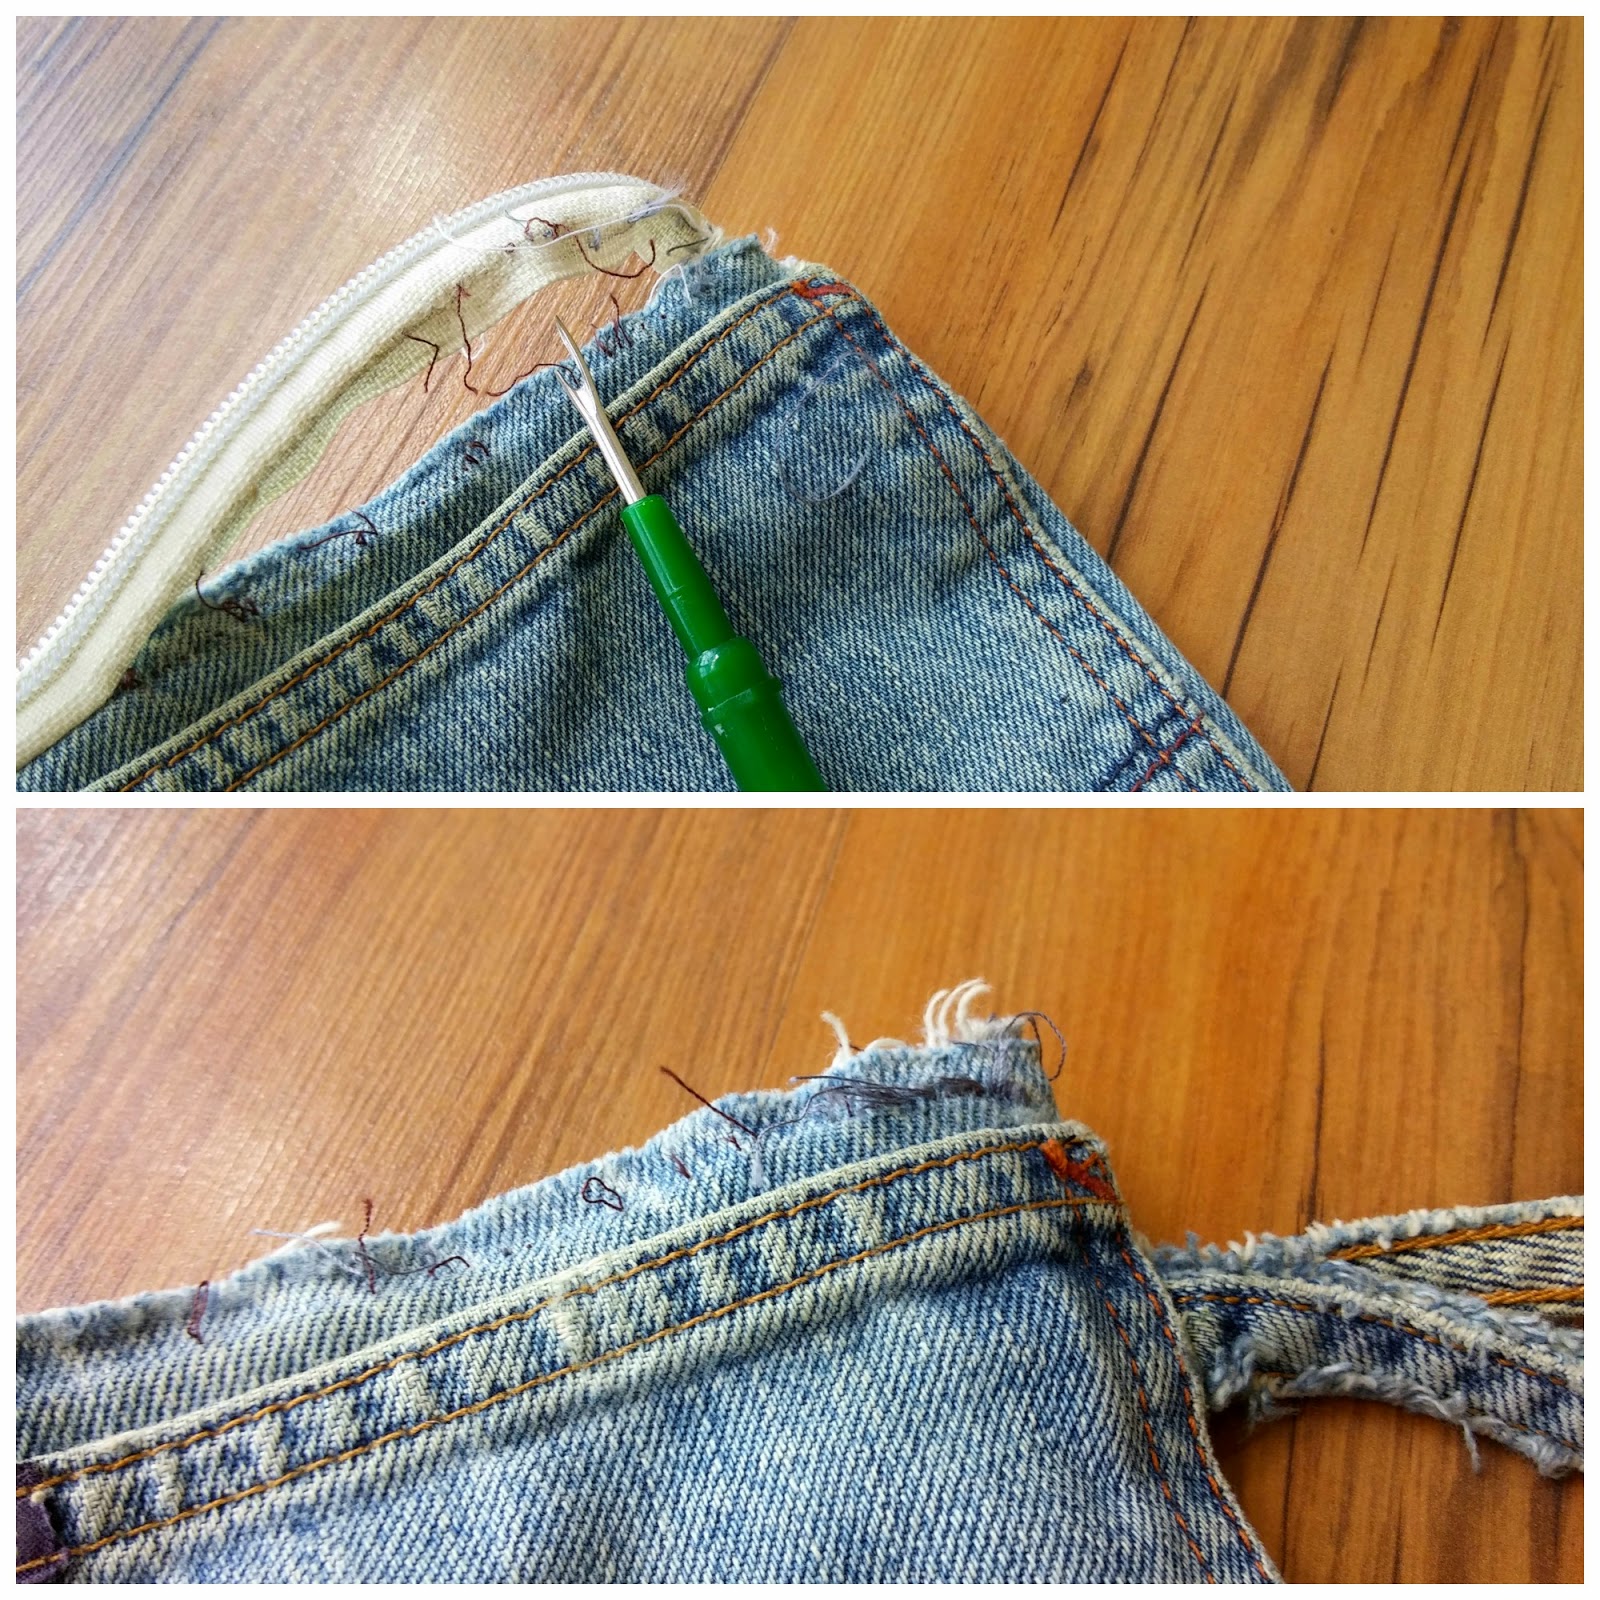 Repair a Zipper